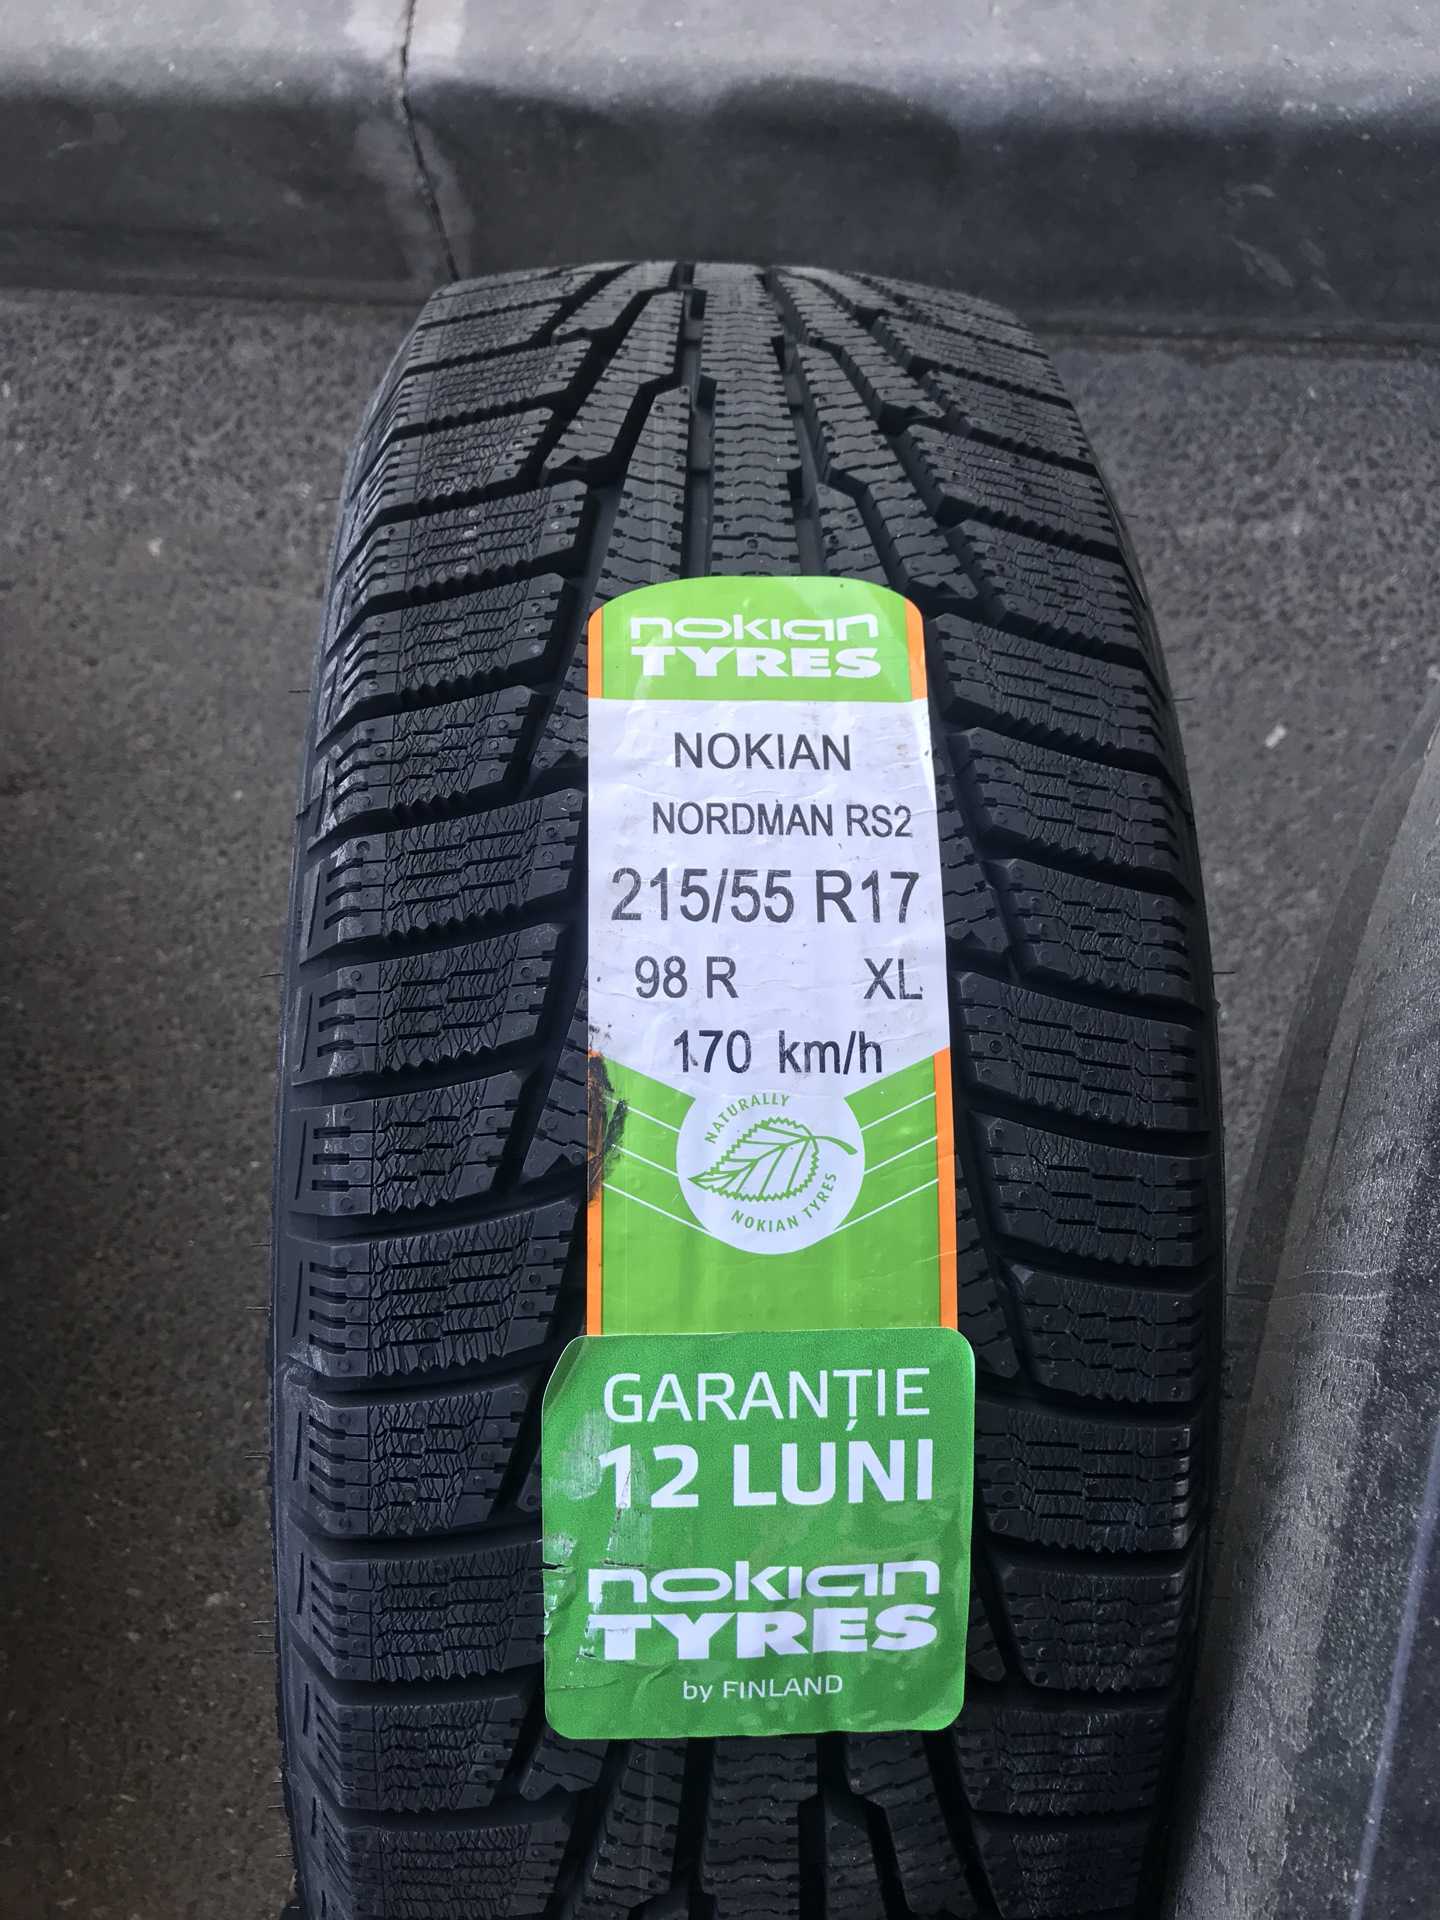 Nokian nordman 7- премиальные шины по доступной цене.